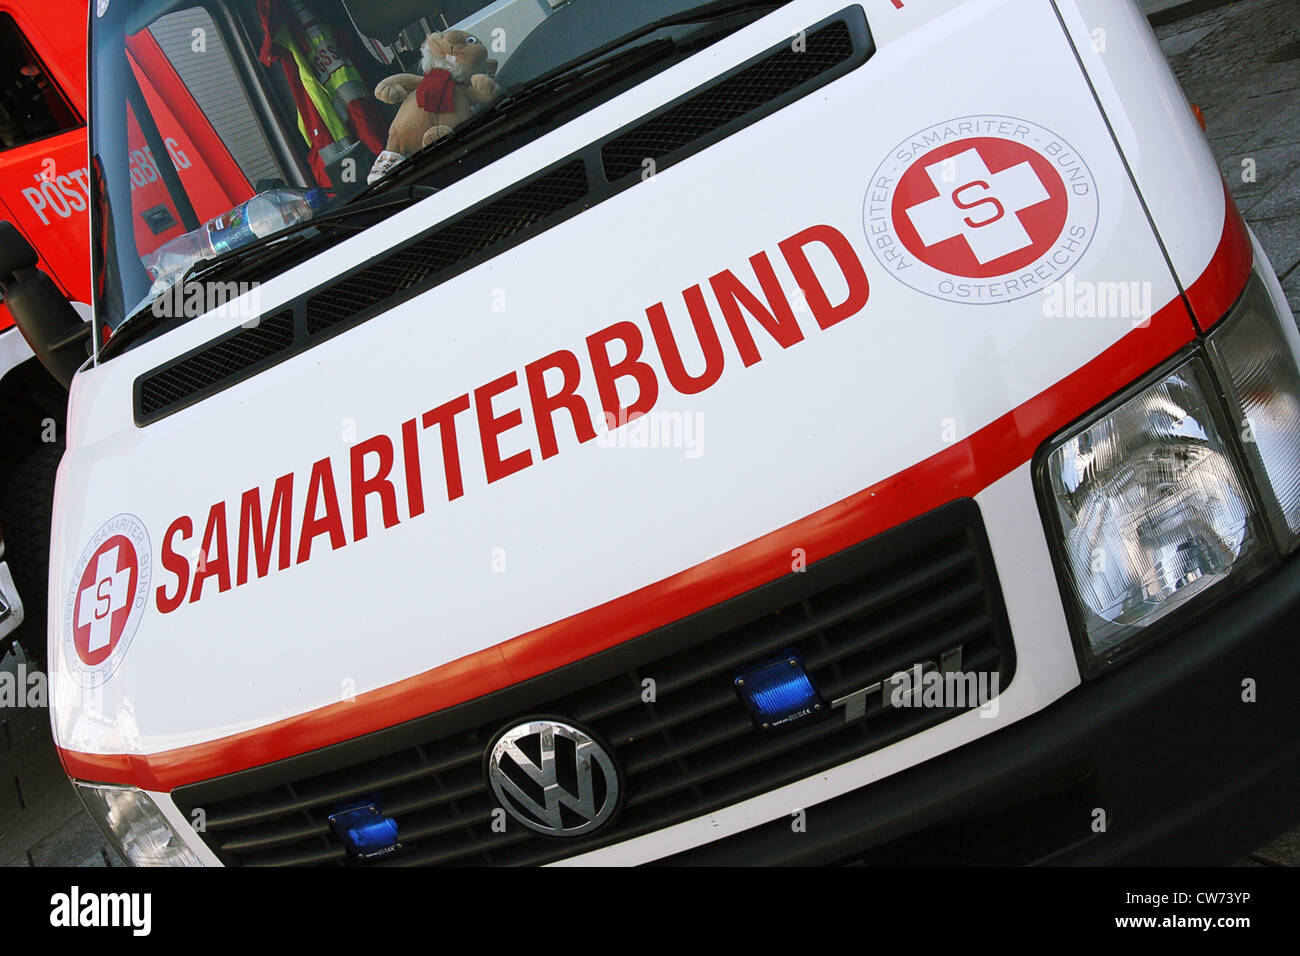 ambulance vehicle of Samariterbund Stock Photo